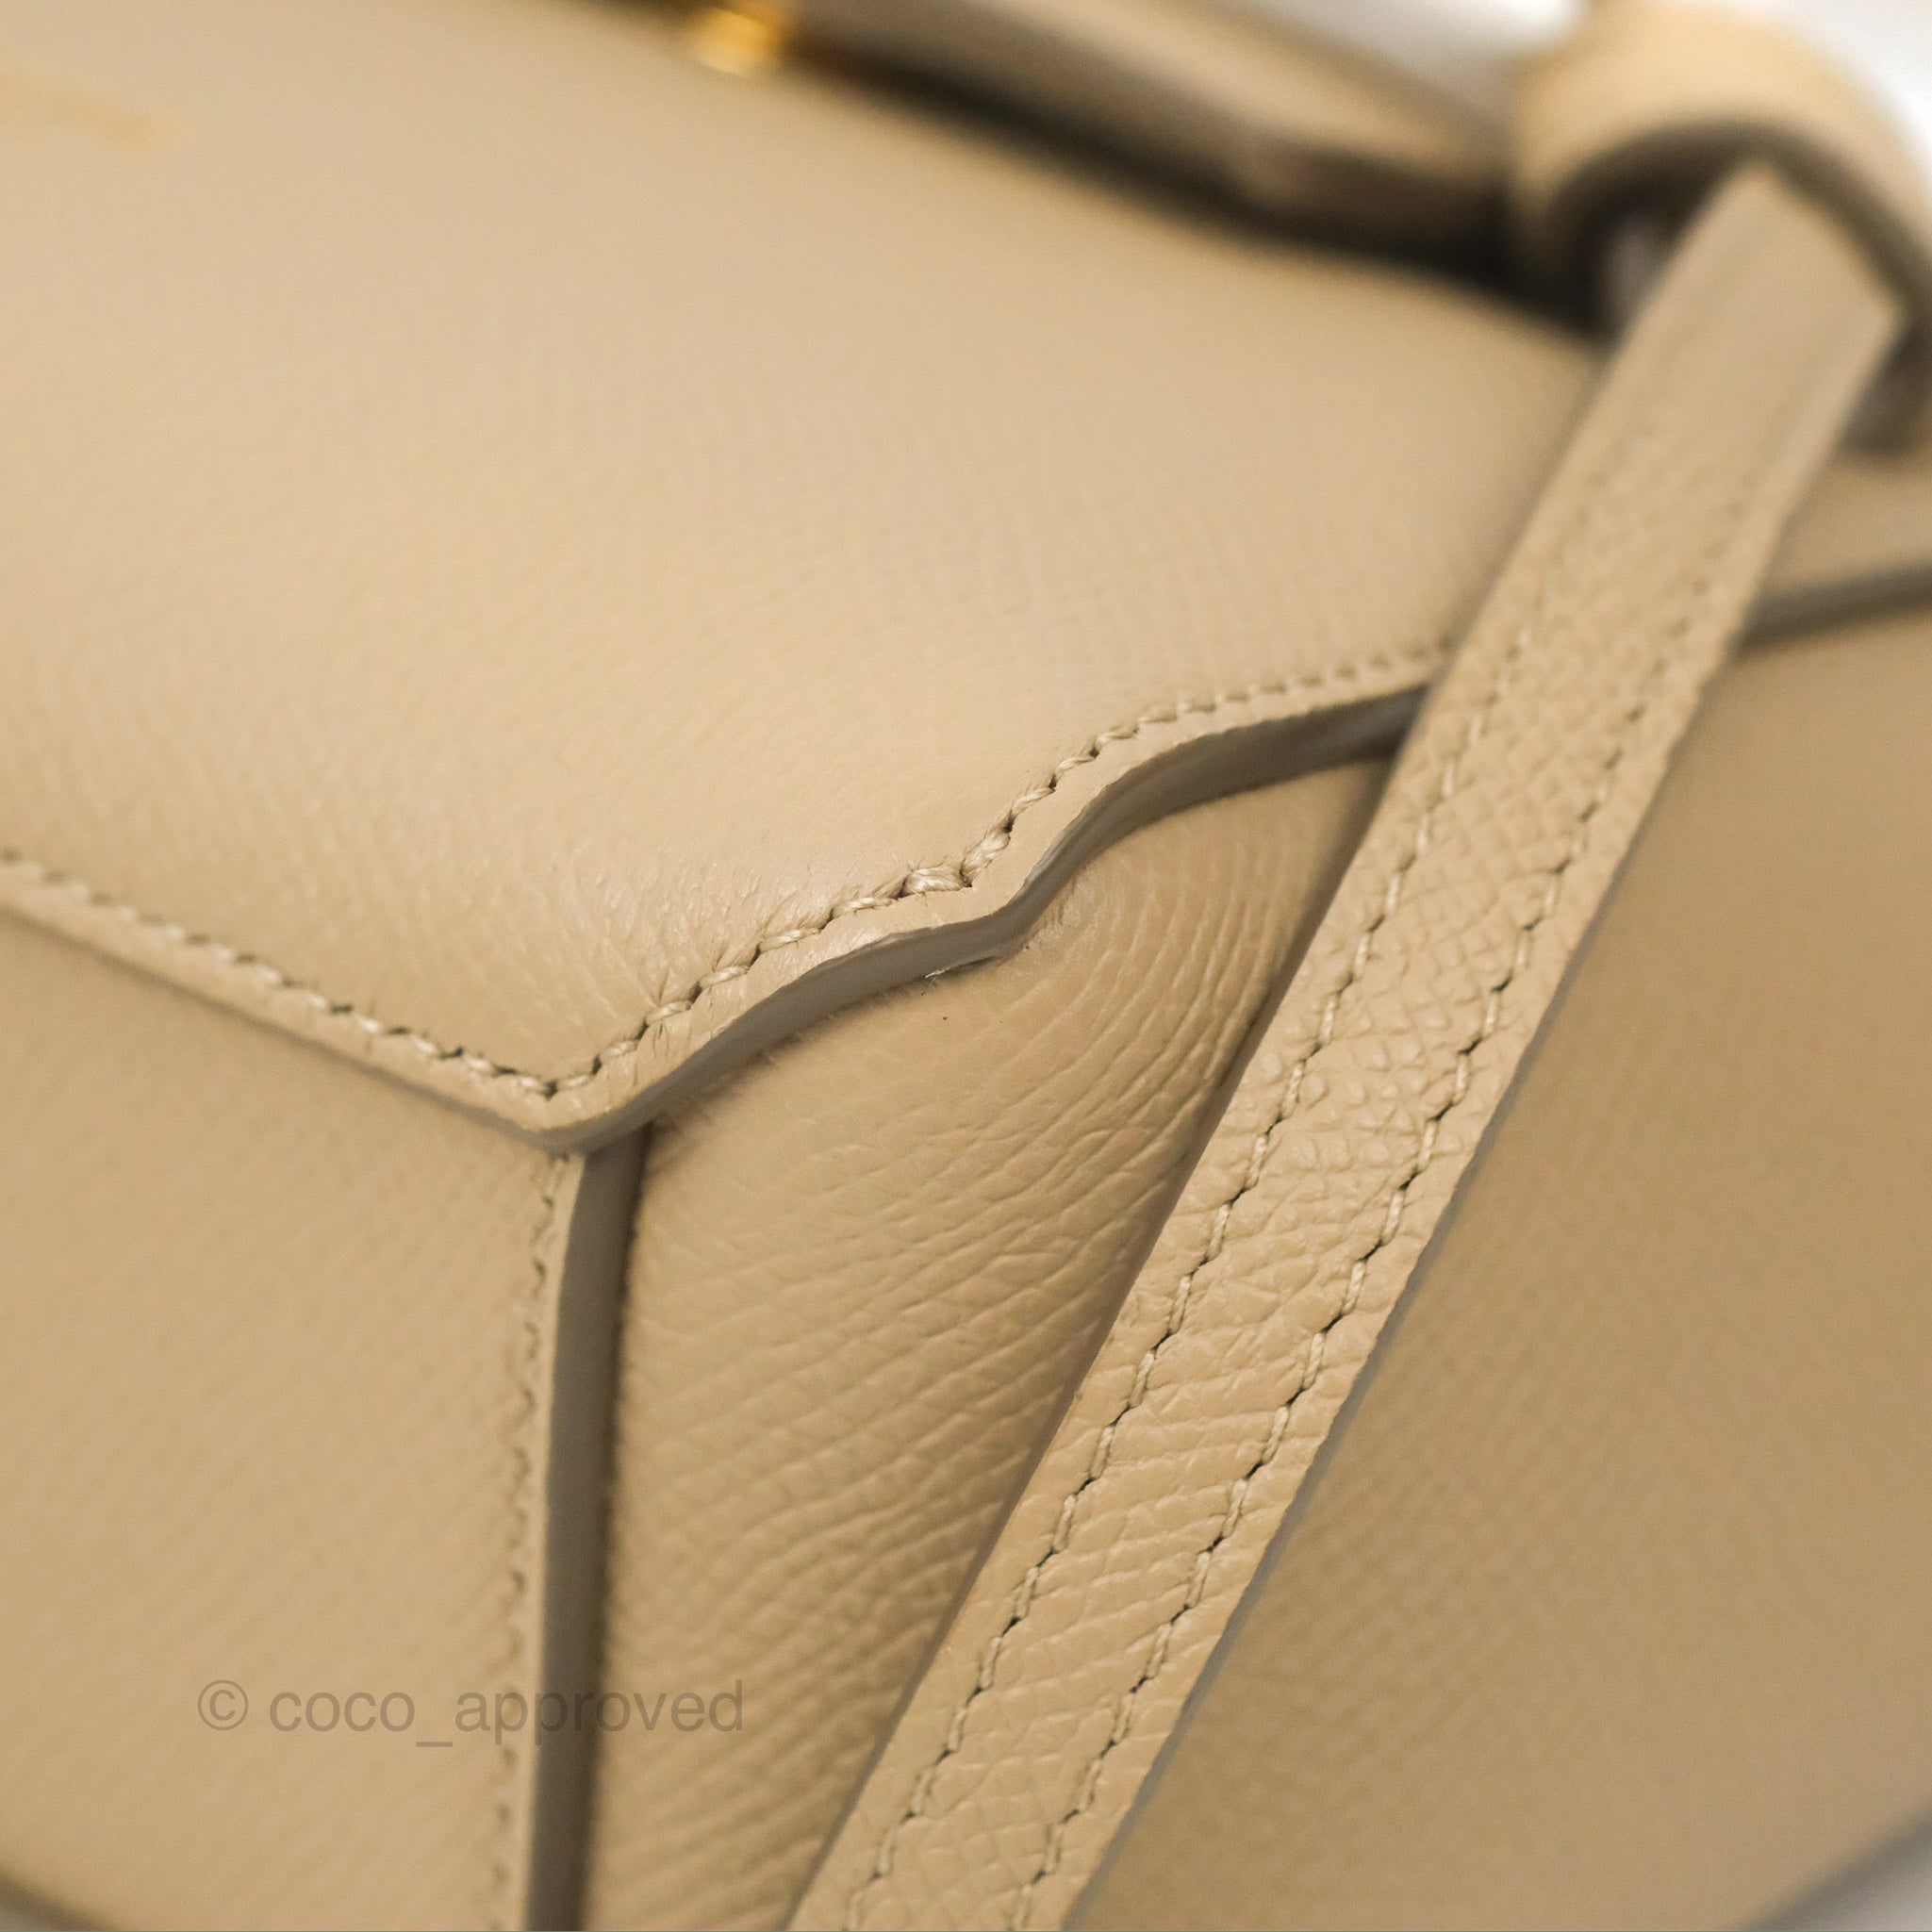 Celine Light Taupe Leather Pico Belt Bag